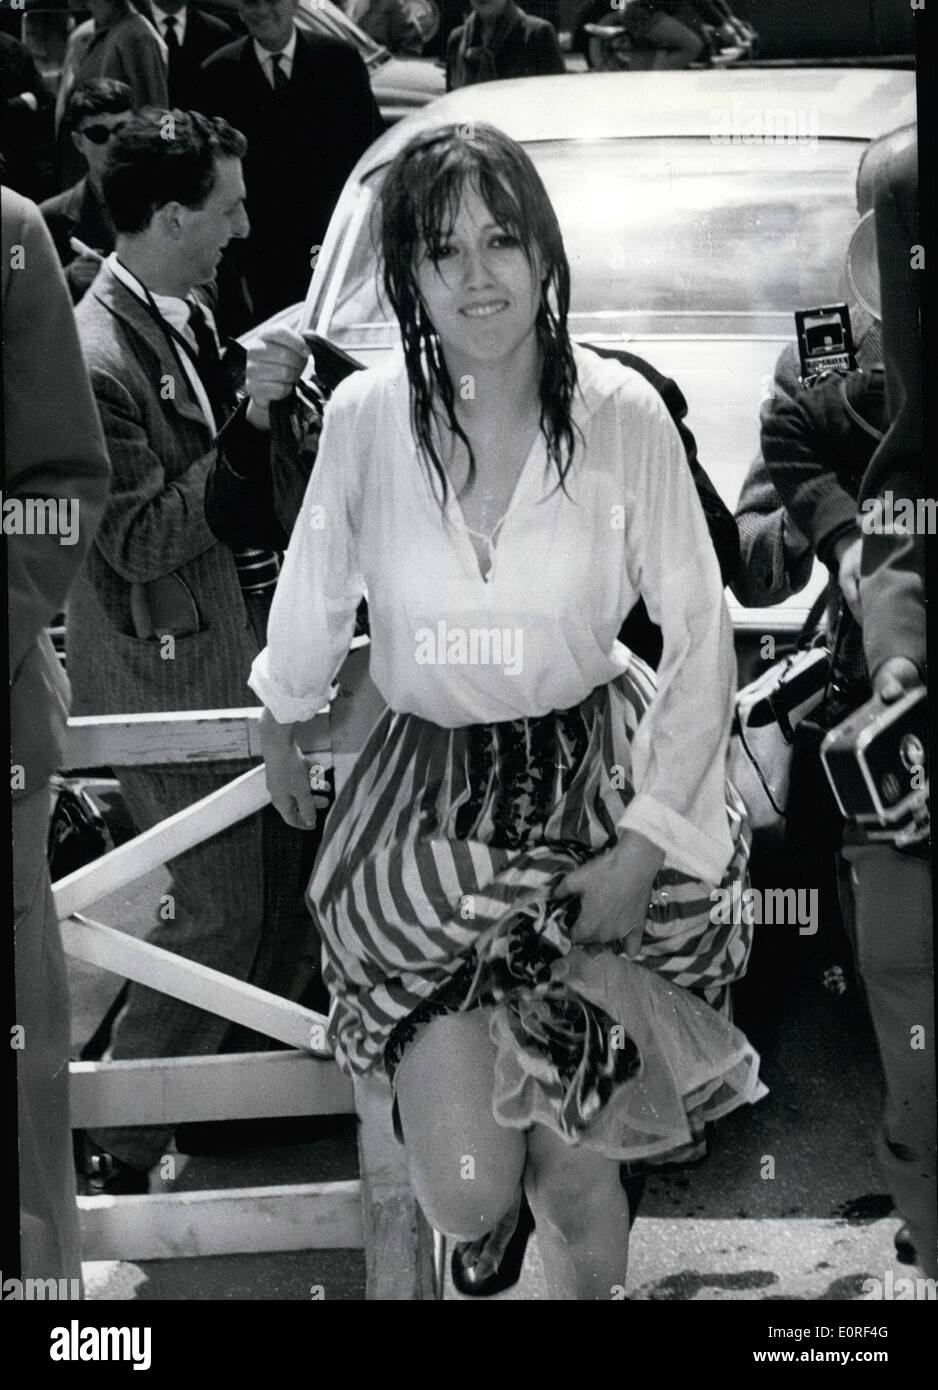 05 maggio 1959 - Cannes Film Festival: Mylene Demongeot prende un bagno forzato: Mylene Demongeot era fuori di fortuna ieri. La piccola barca era su tenendo un mare riso fuori dalla spiaggia capovolta come ella si alzò a posare per i fotografi. La giovane attrice aveva a nuotare indietro di pochi metri e raggiunto riva tge tutto bagnato e disheveled. Mostra fotografica di Mylene Demongeot salire gli scalini dopo il suo bagno forzato. Foto Stock